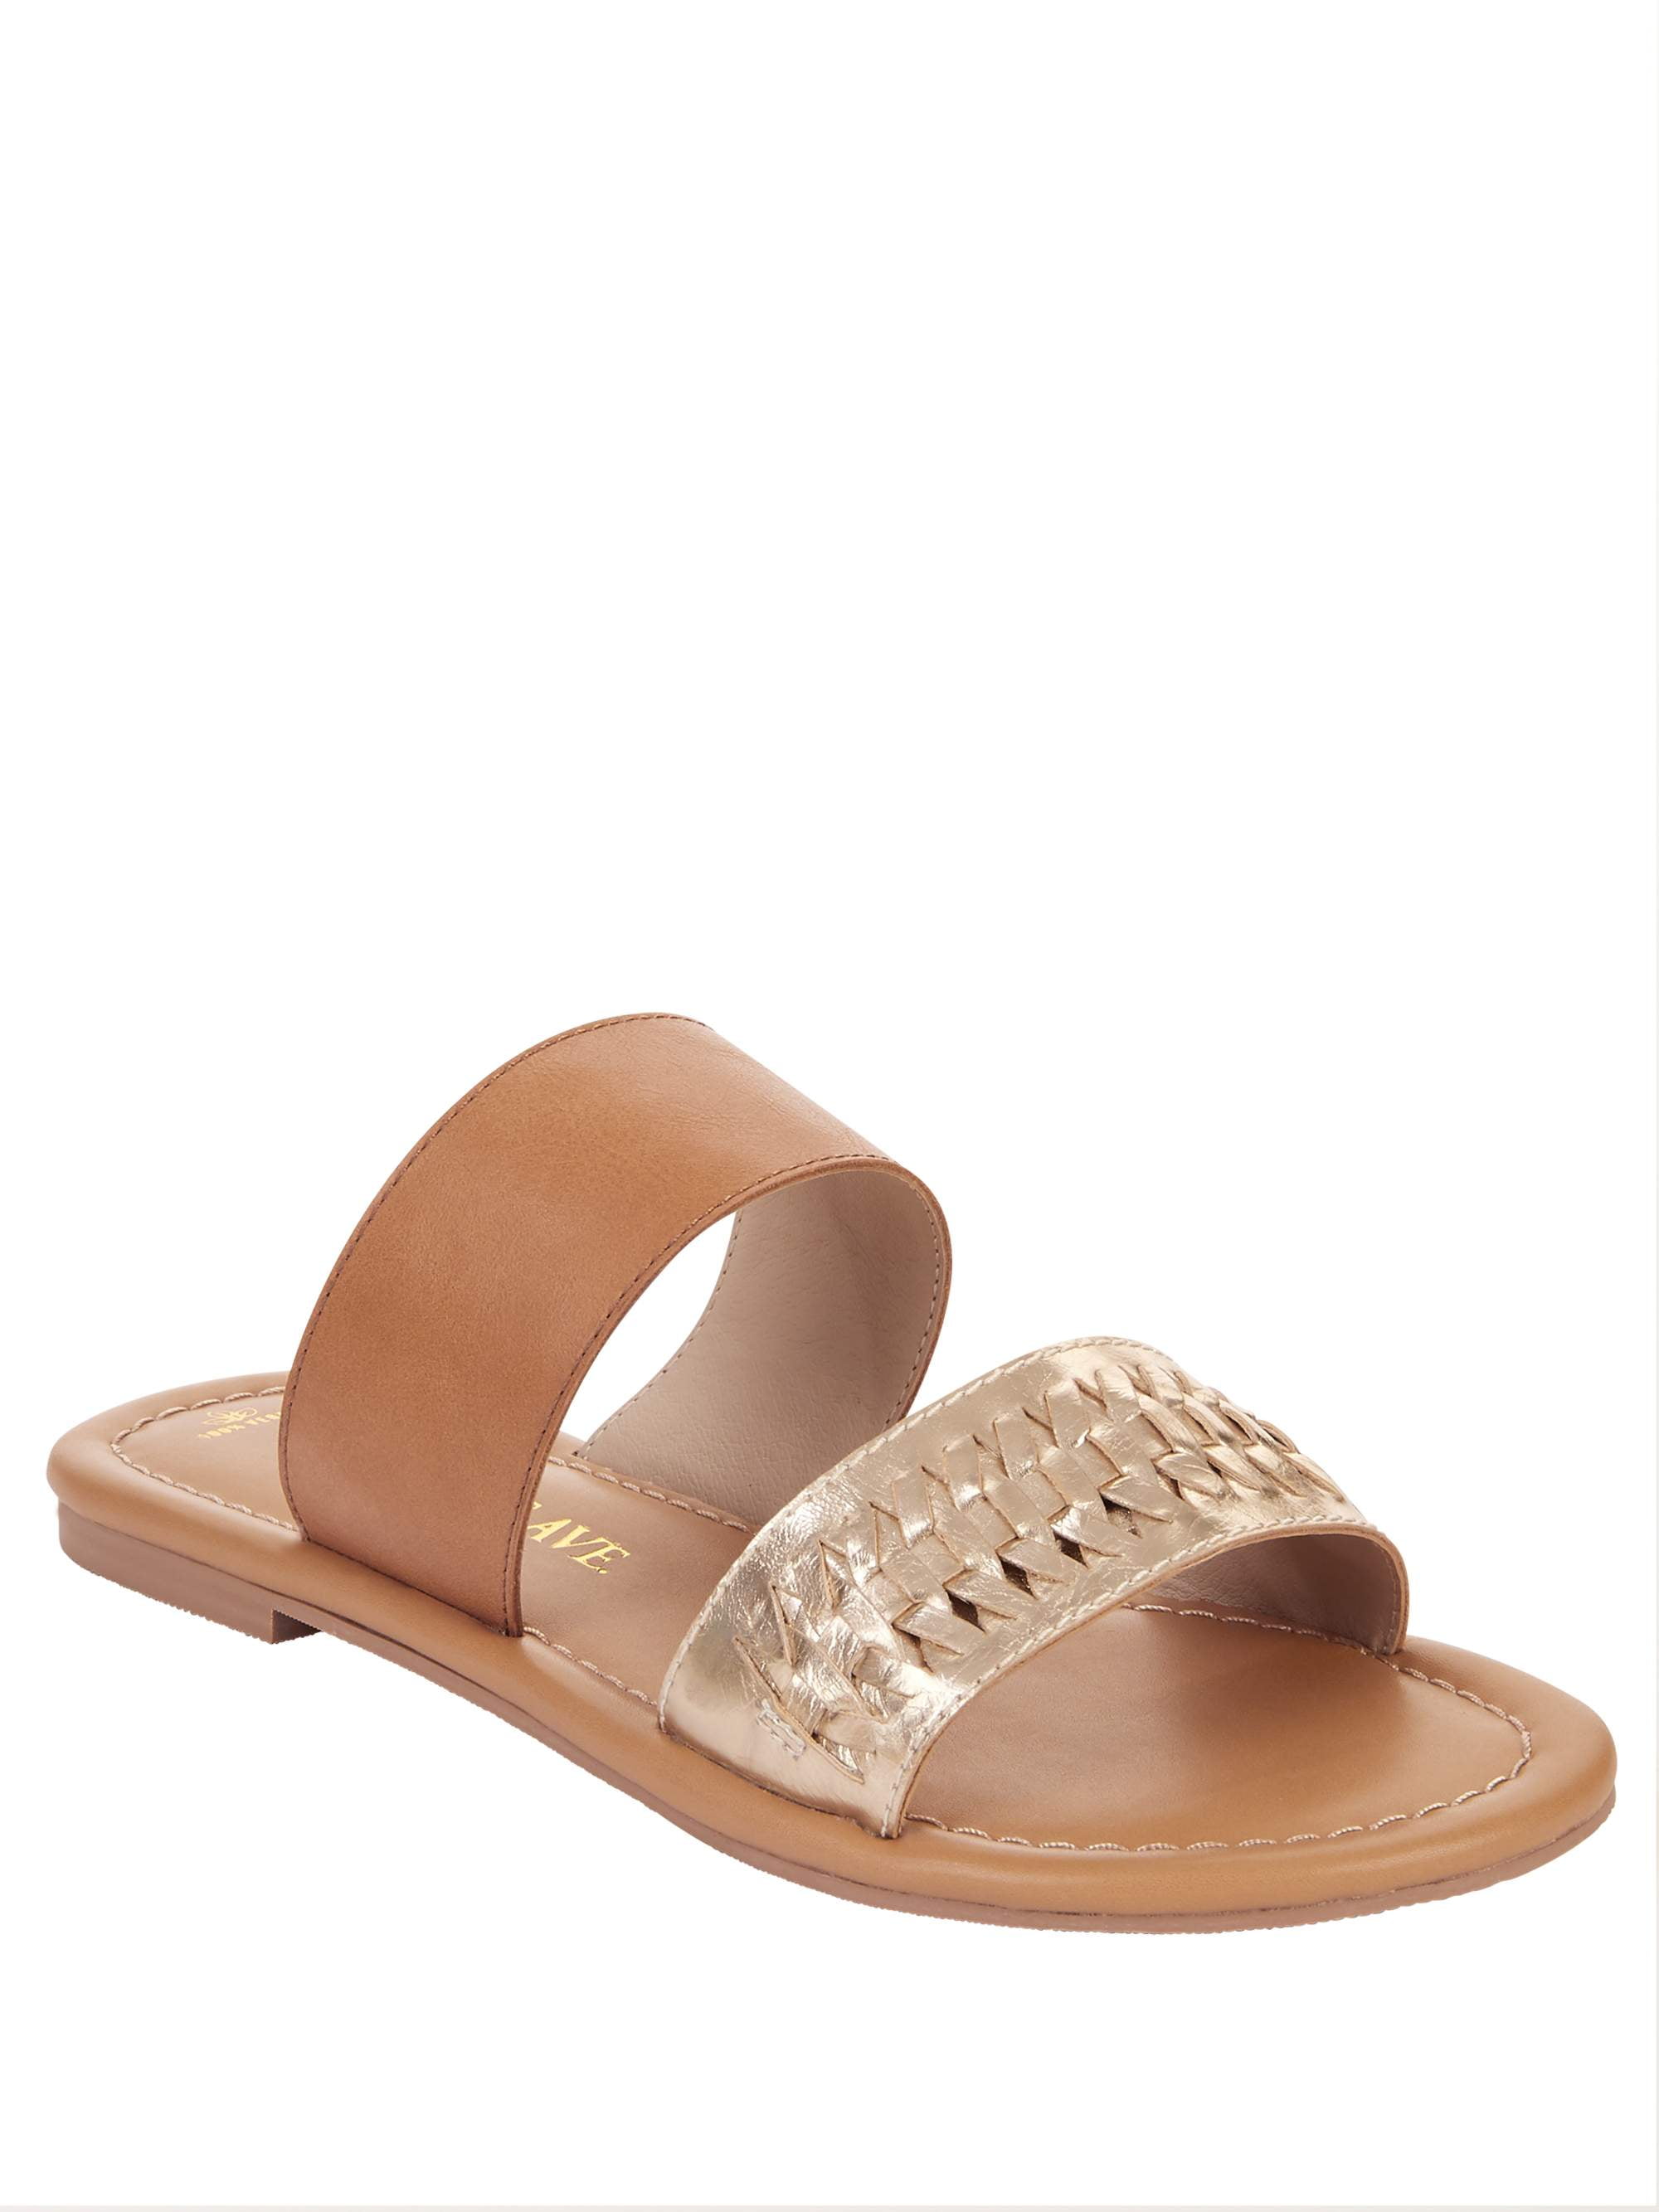 one strap slide sandals